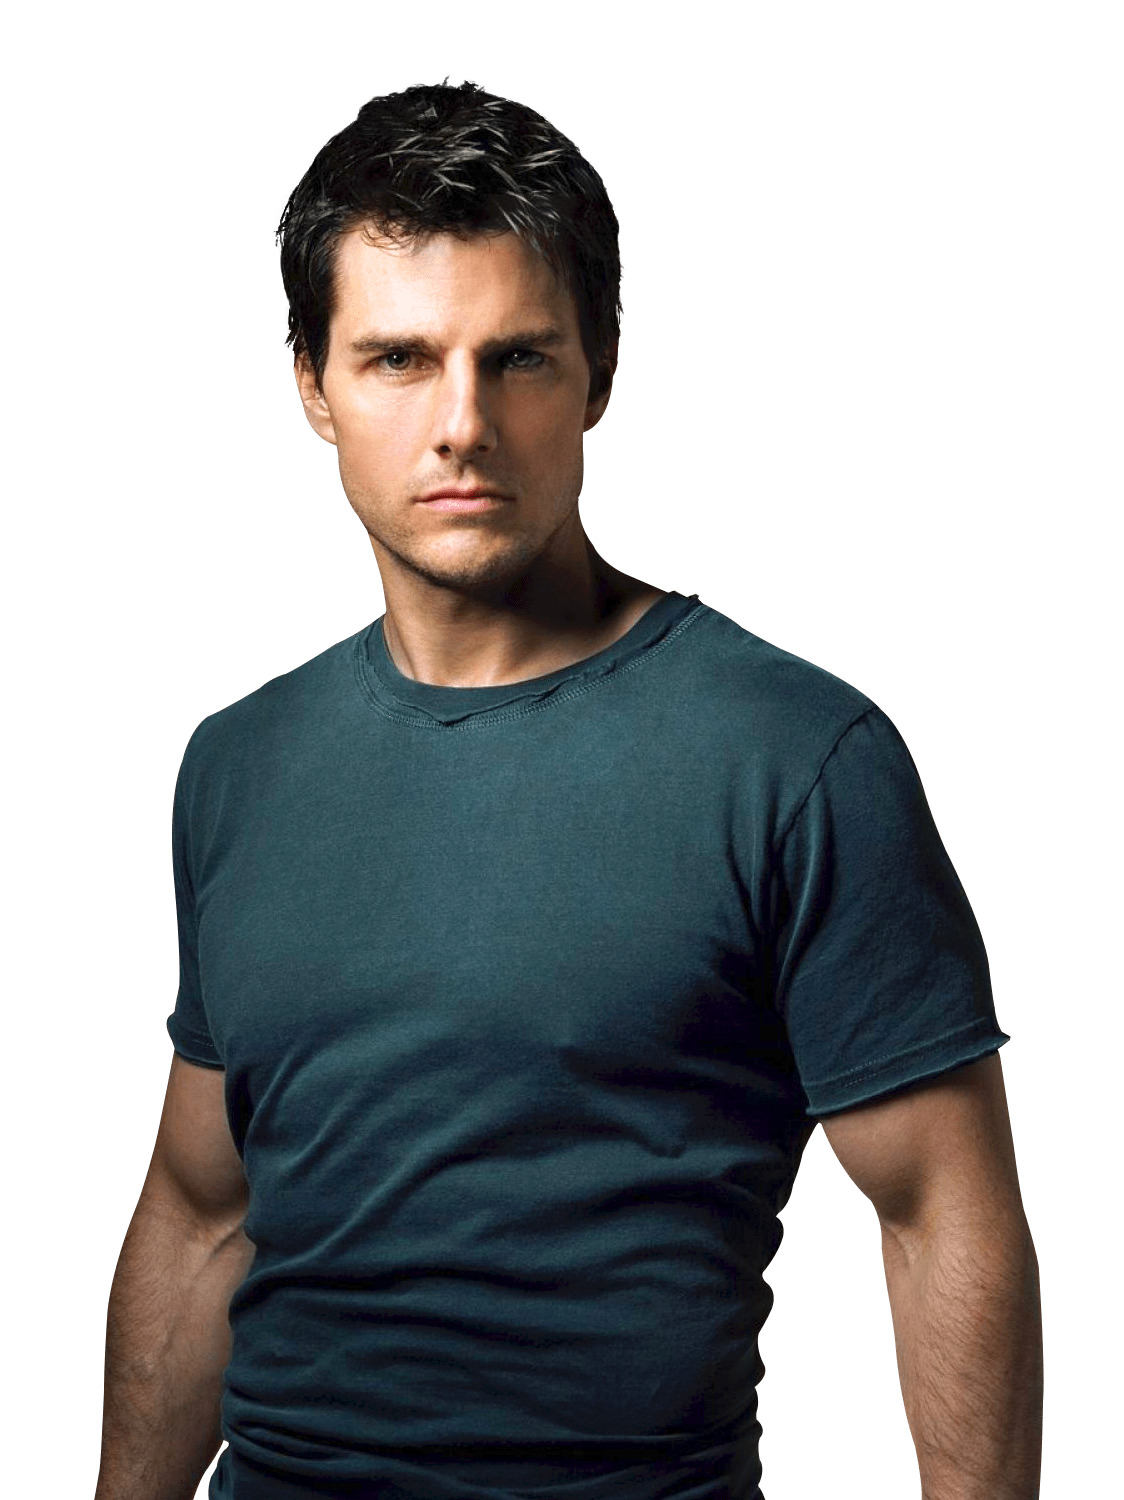 Tom Cruise Tshirt icons